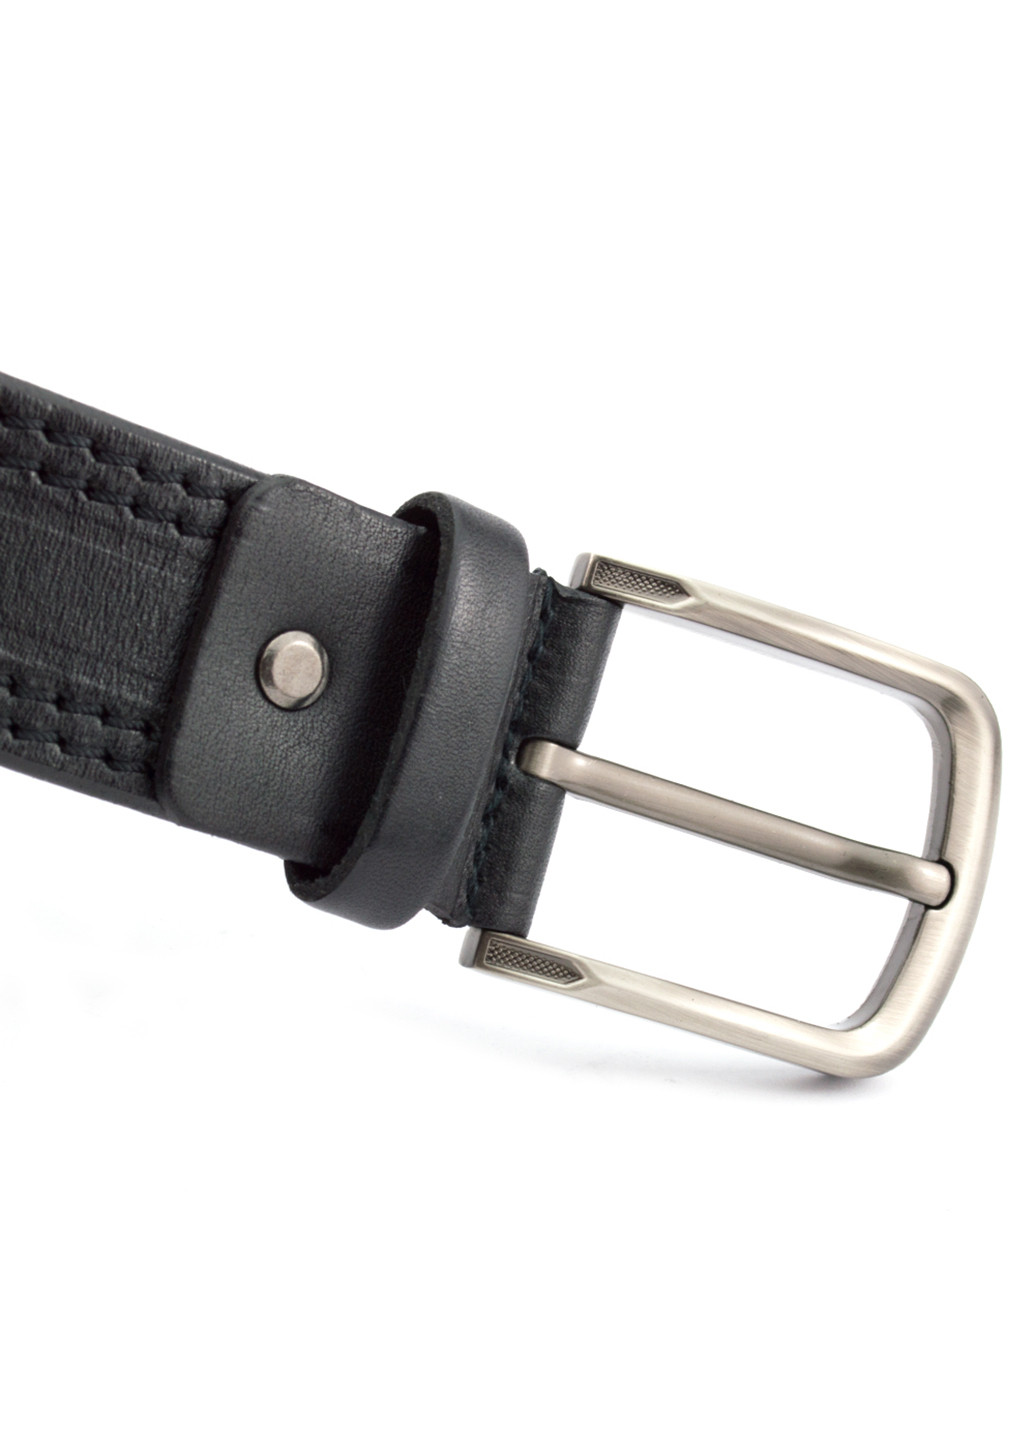 Ремень мужской кожаный под джинсы черный KB-40-02 (120 см) King's Belt (204850354)